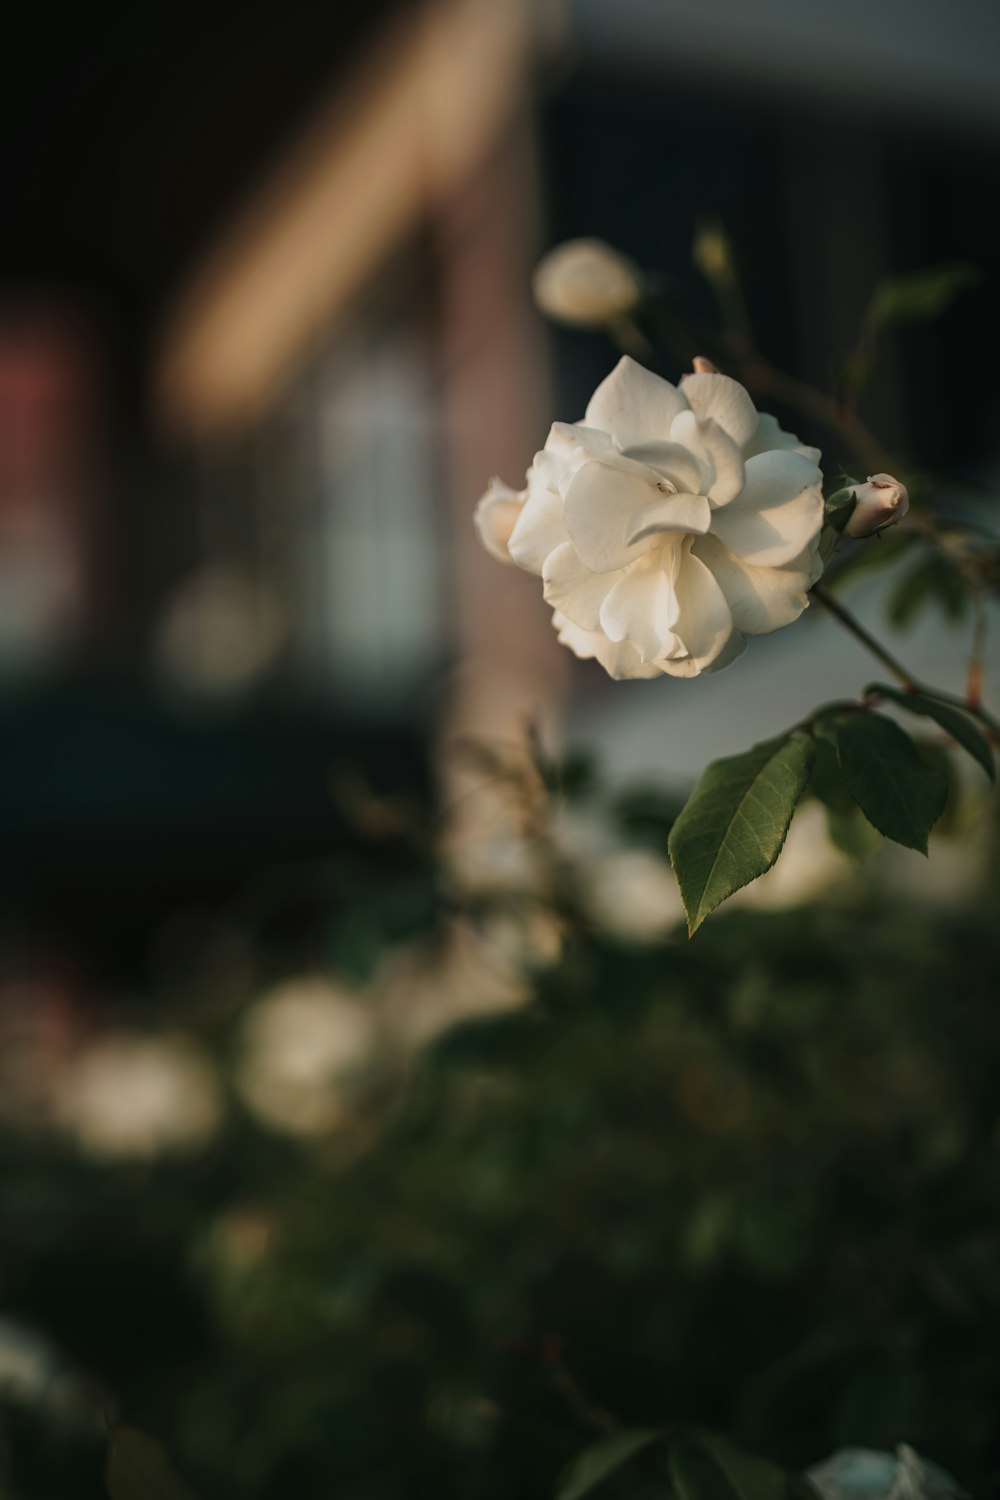 틸트 시프트 렌즈의 흰색 꽃